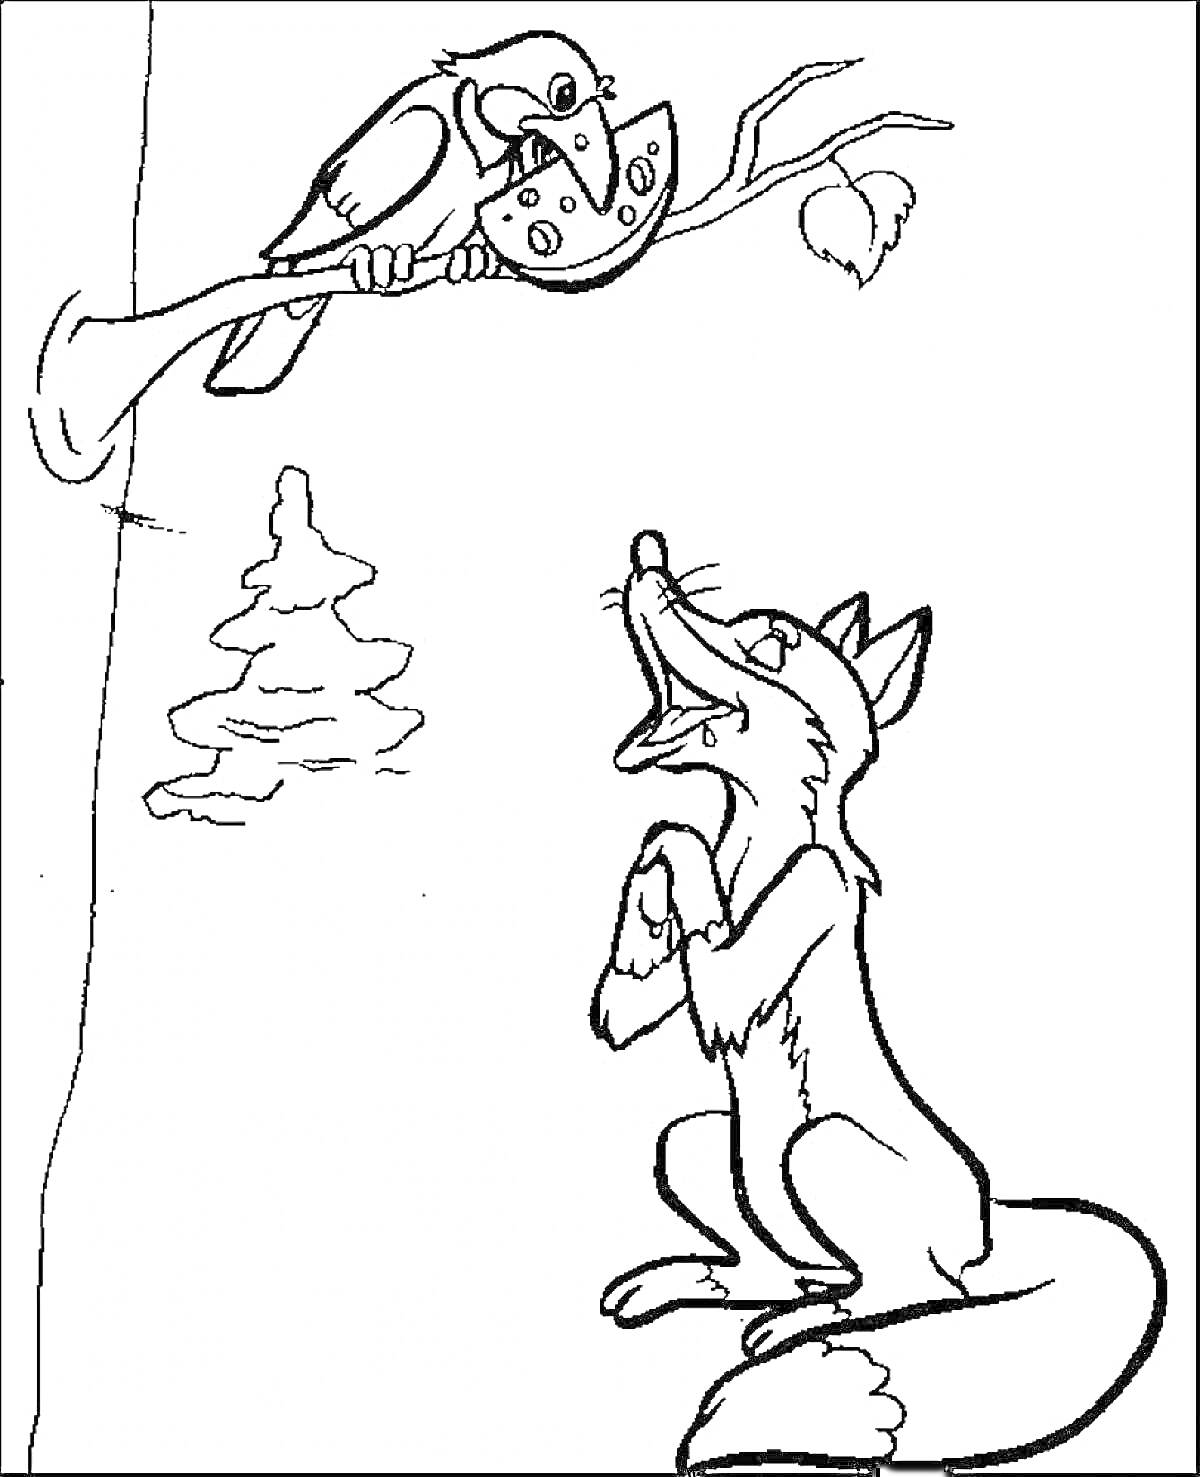 Раскраска Лисица и Ворона с сыром на дереве, стоящая лиса внизу, ели и дерево с веткой.